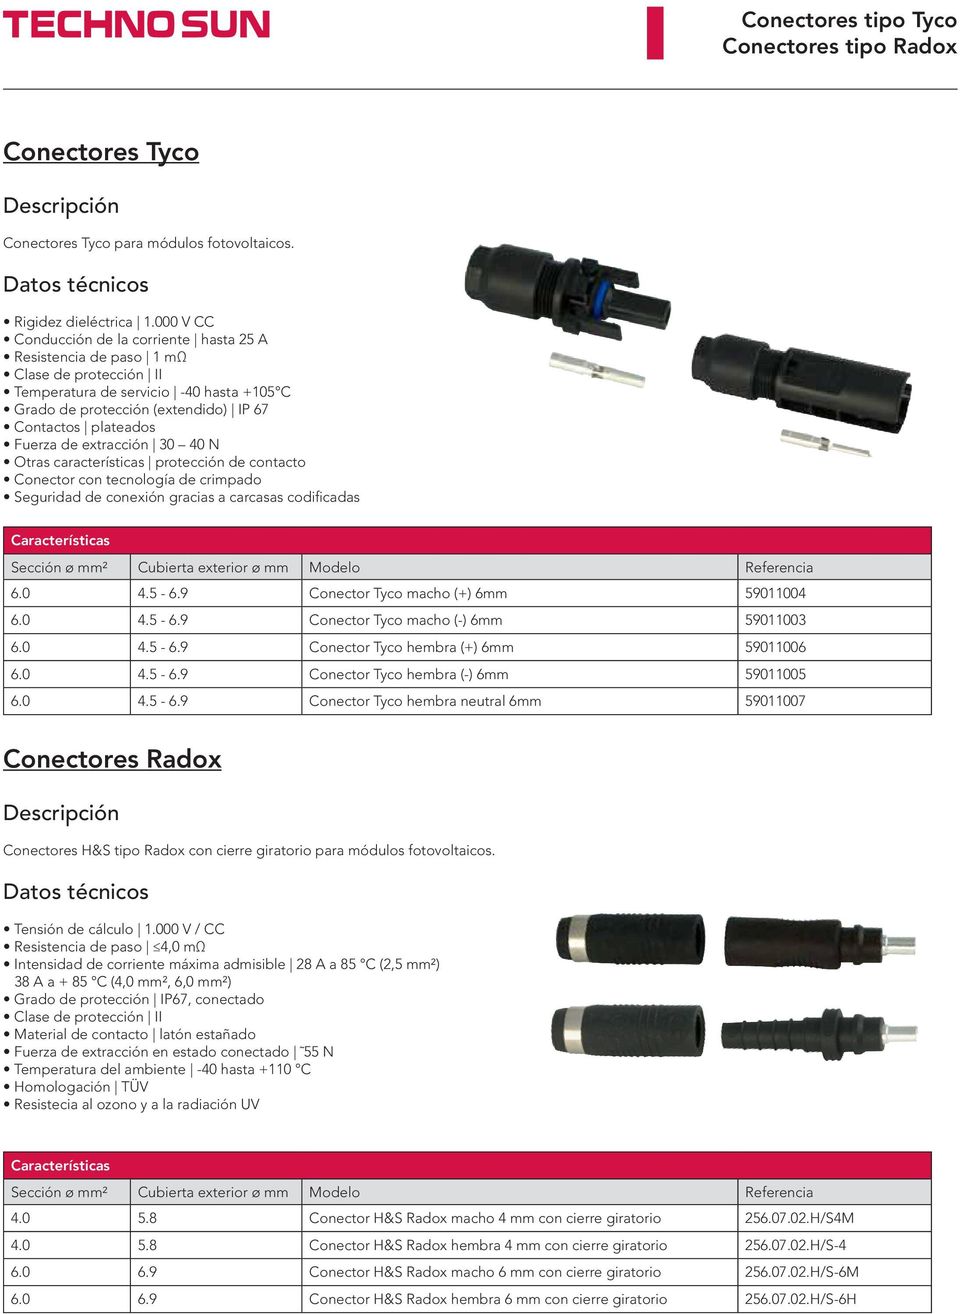 Otras características protección de contacto Conector con tecnología de crimpado Seguridad de conexión gracias a carcasas codificadas 6.0 4.5-6.9 Conector Tyco macho (+) 6mm 59011004 6.0 4.5-6.9 Conector Tyco macho (-) 6mm 59011003 6.